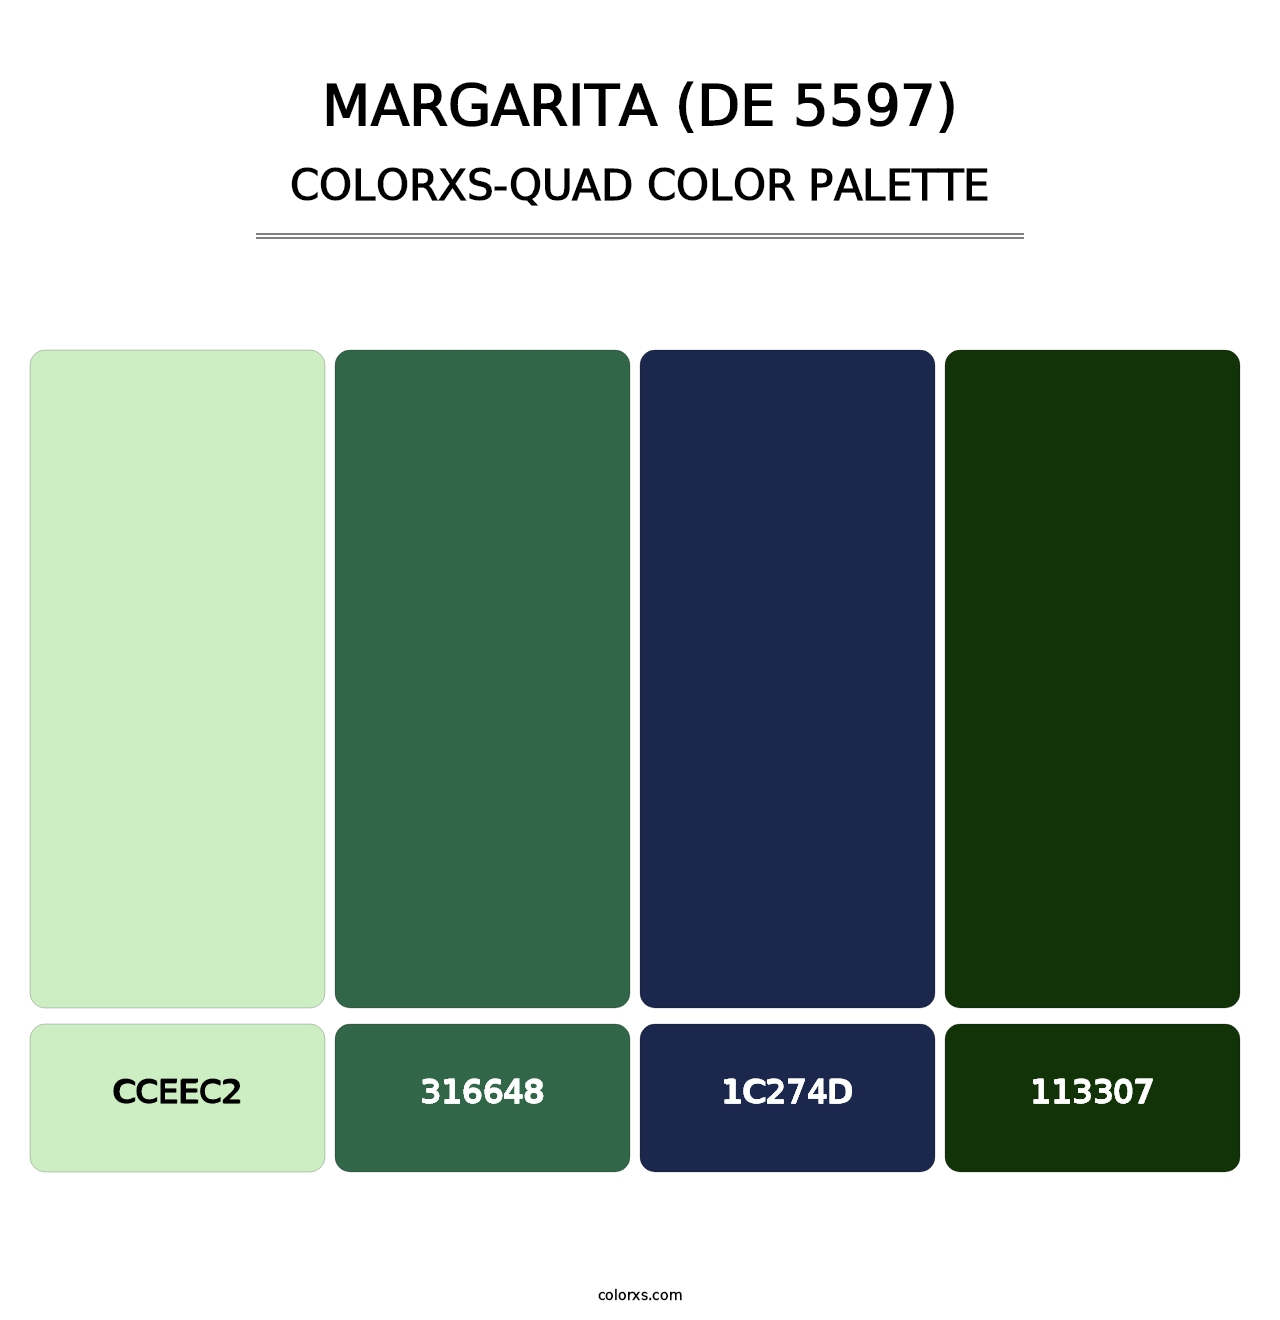 Margarita (DE 5597) - Colorxs Quad Palette